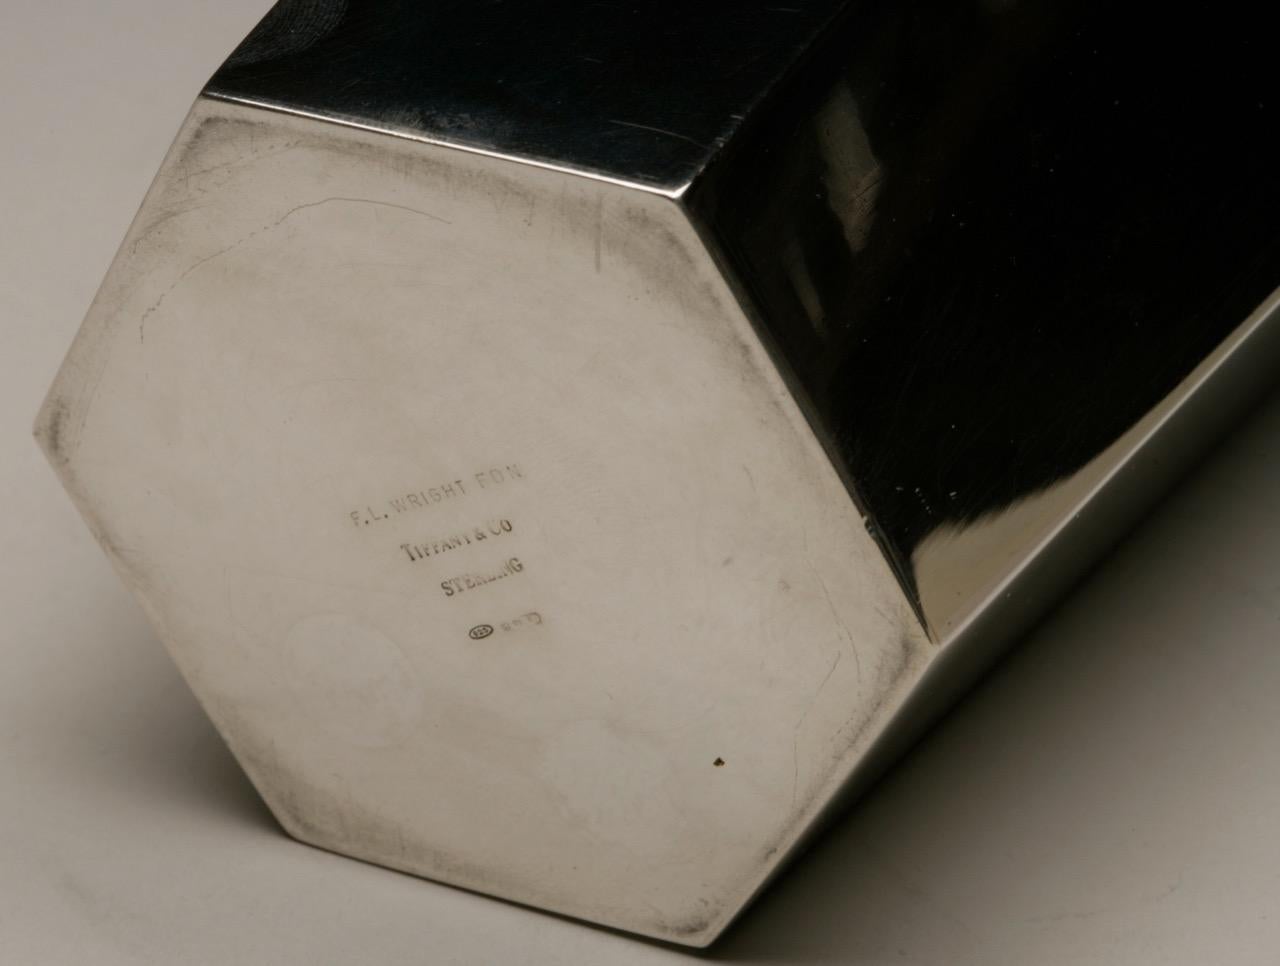 Italian Frank Lloyd Wright Designed Sterling Silver Vase by Tiffany